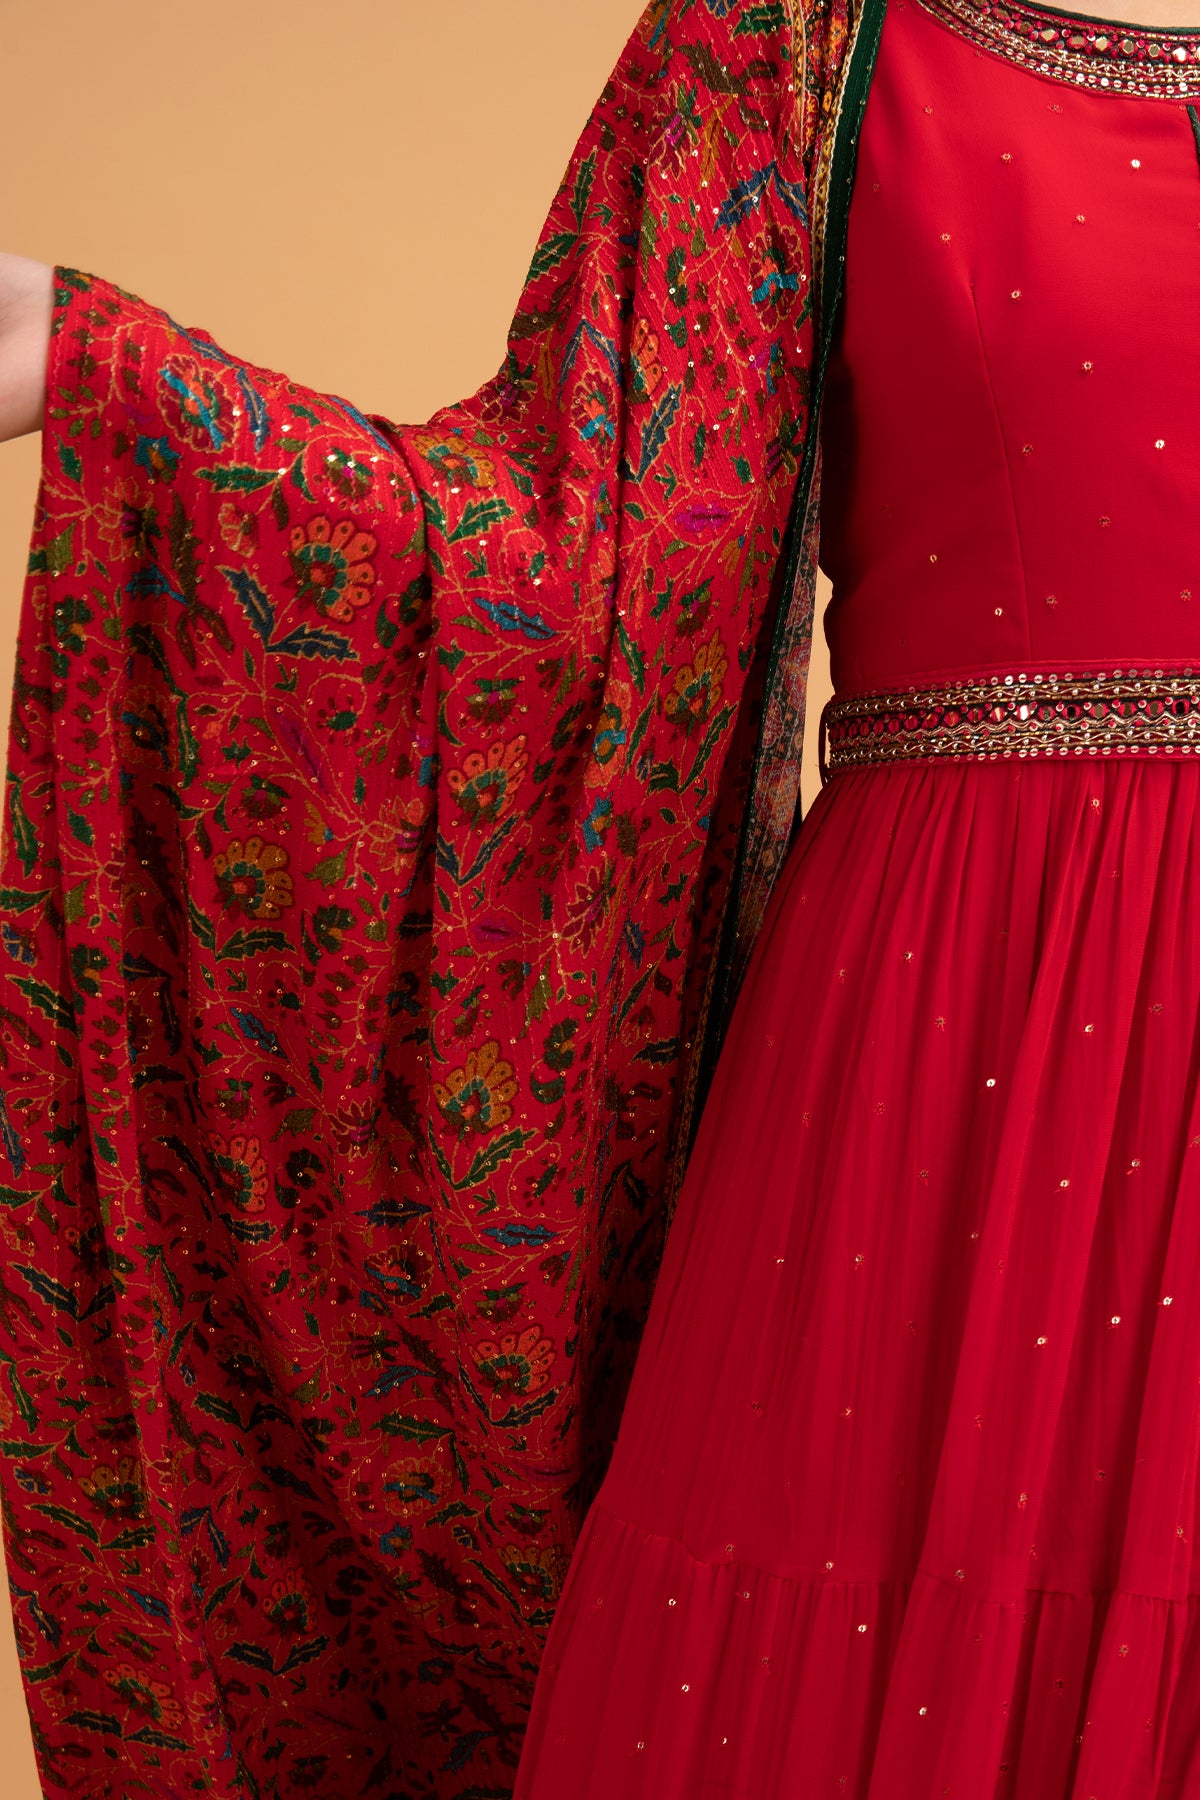 Krista Black and Dark Red Wedding Dress| Brides & Tailor